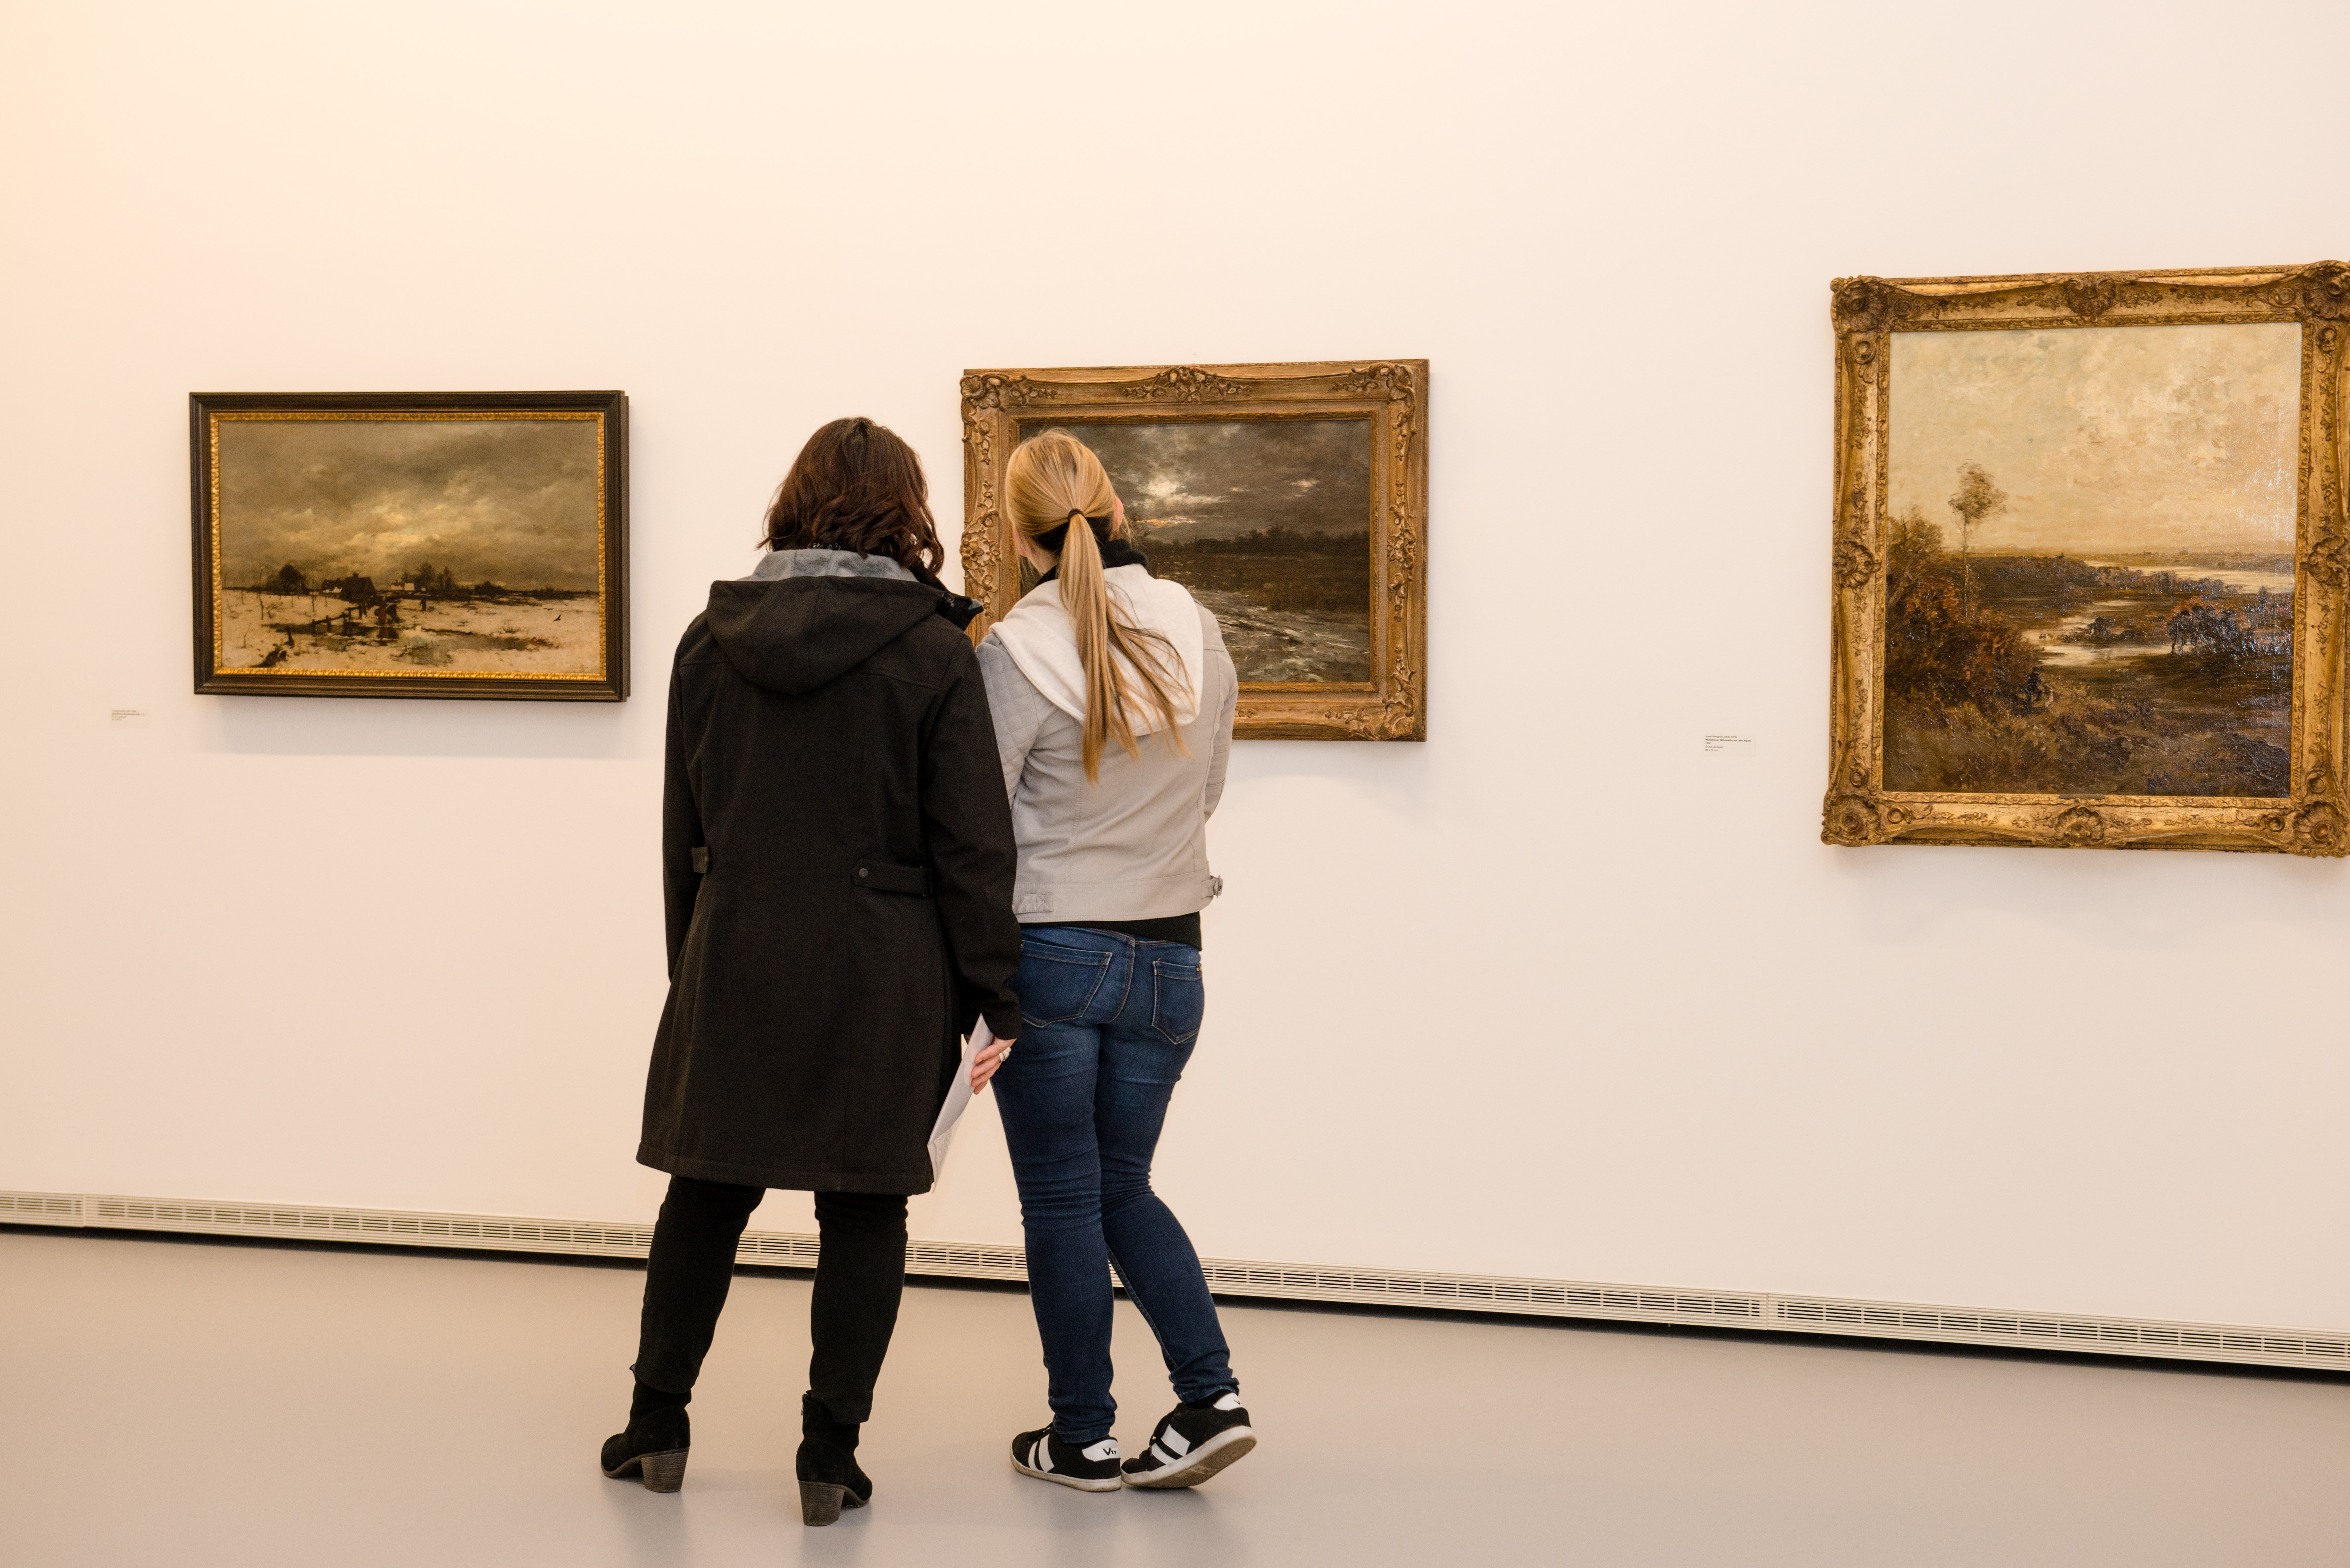 Zwei Frauen betrachten ein Bild in einem Museum.